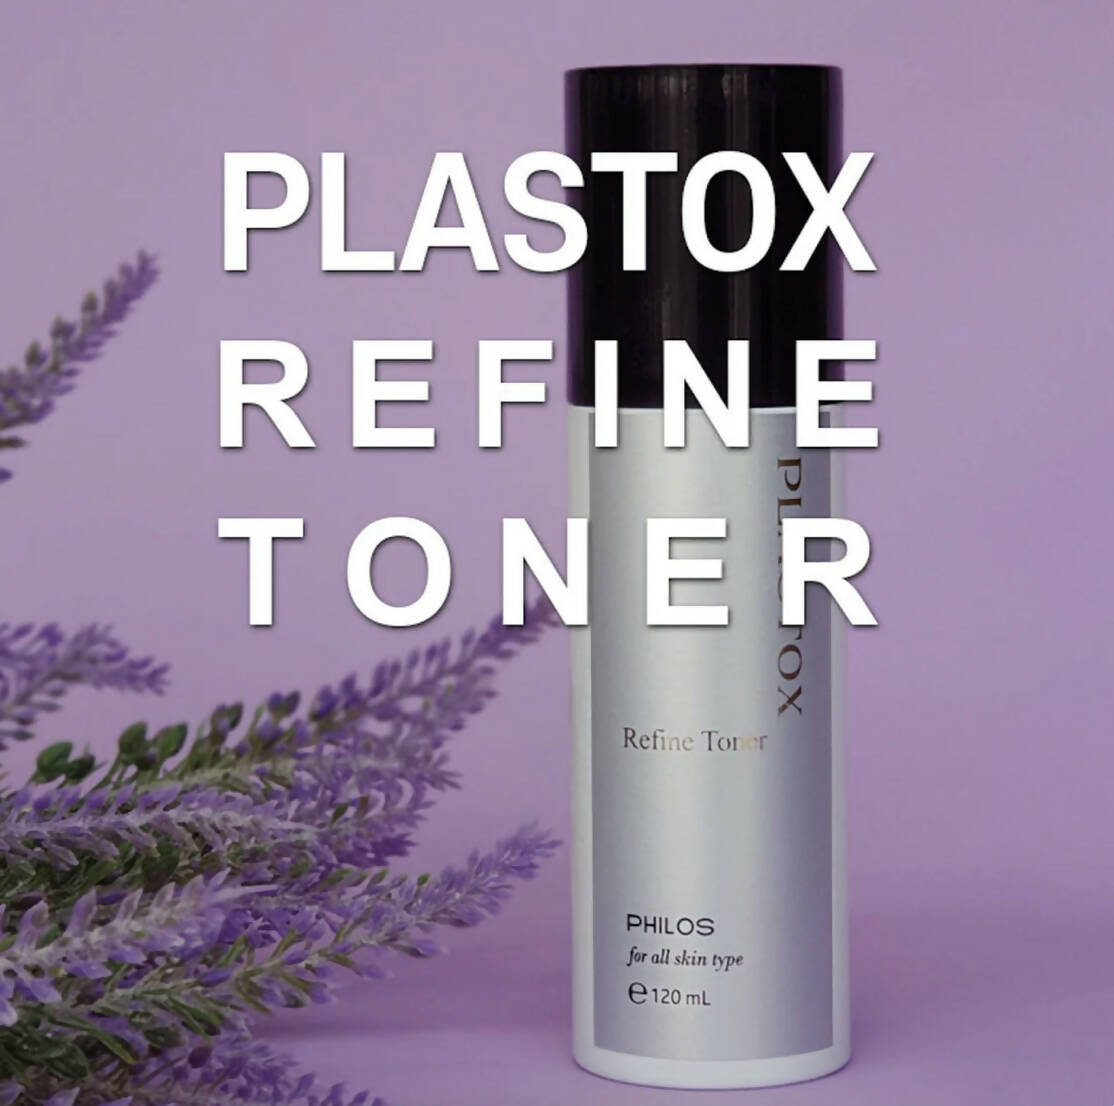 Philos Plastox Refine Toner, 120 ml